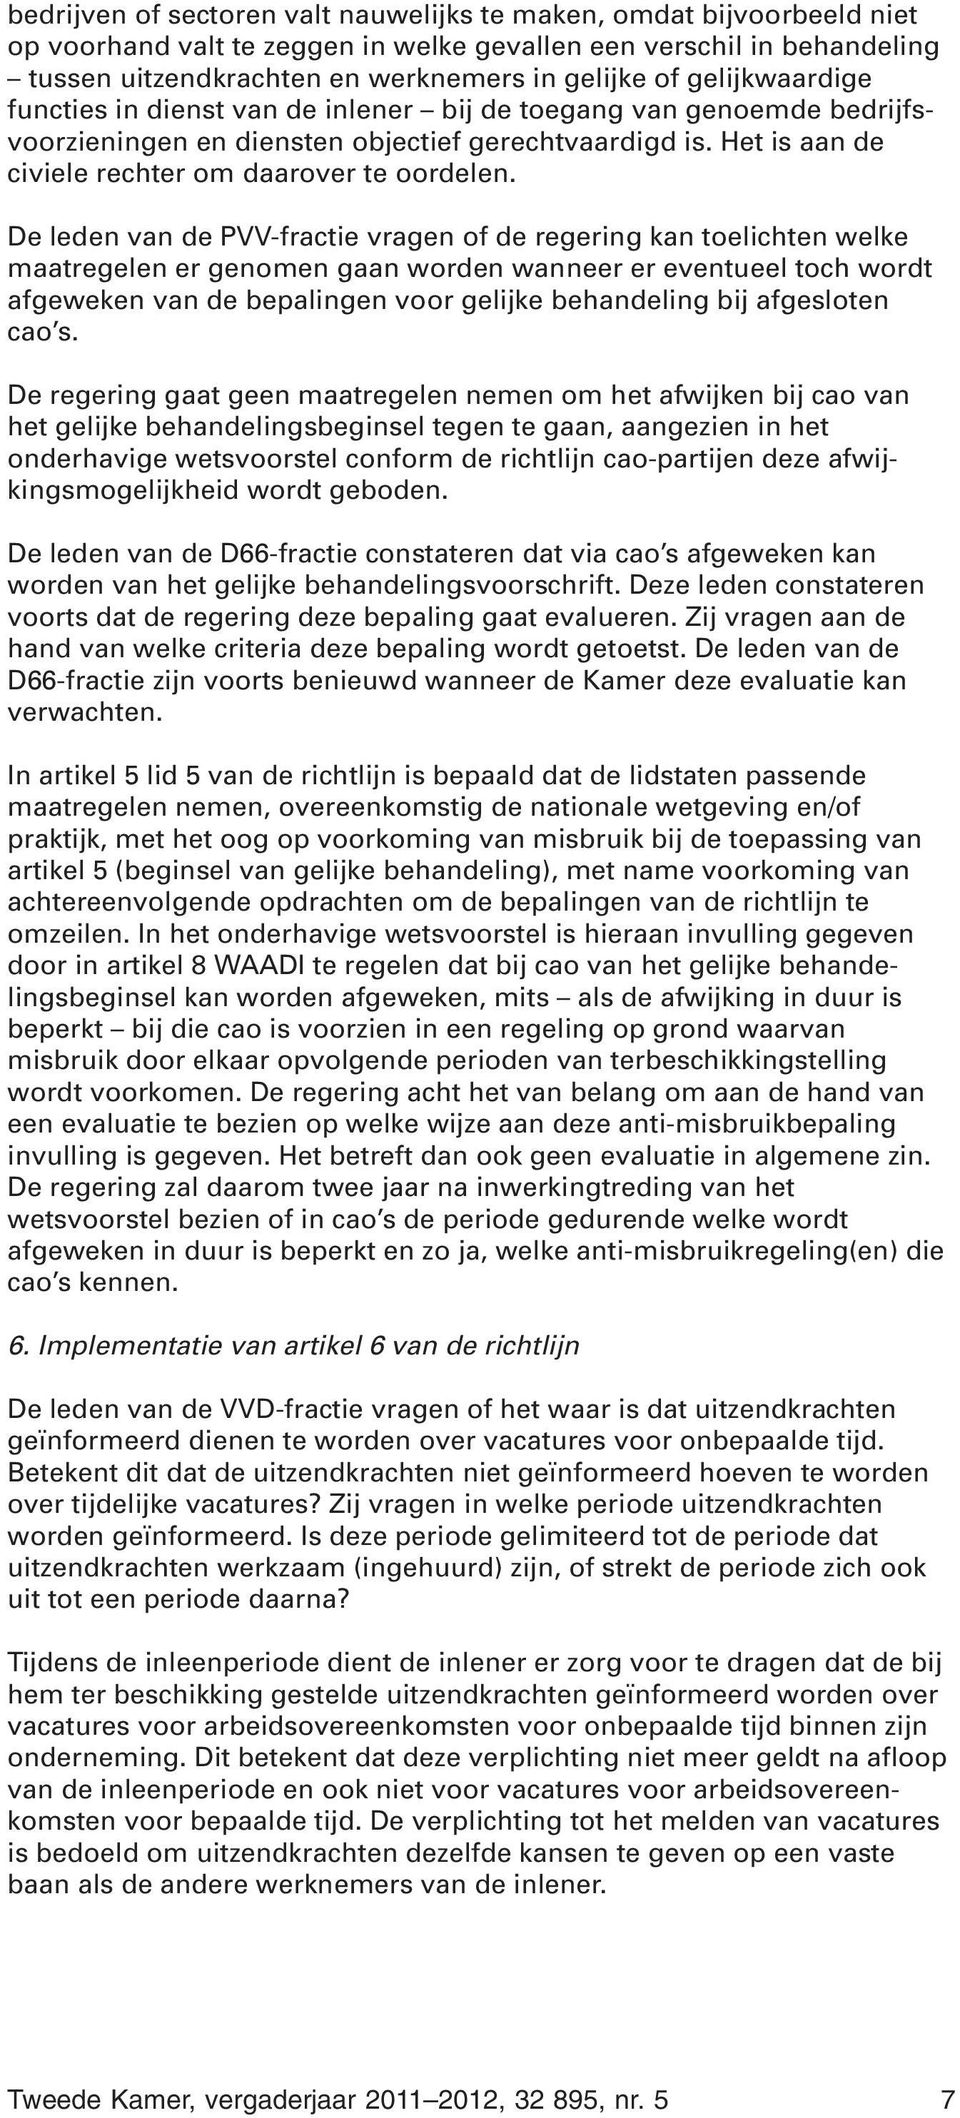 De leden van de PVV-fractie vragen of de regering kan toelichten welke maatregelen er genomen gaan worden wanneer er eventueel toch wordt afgeweken van de bepalingen voor gelijke behandeling bij